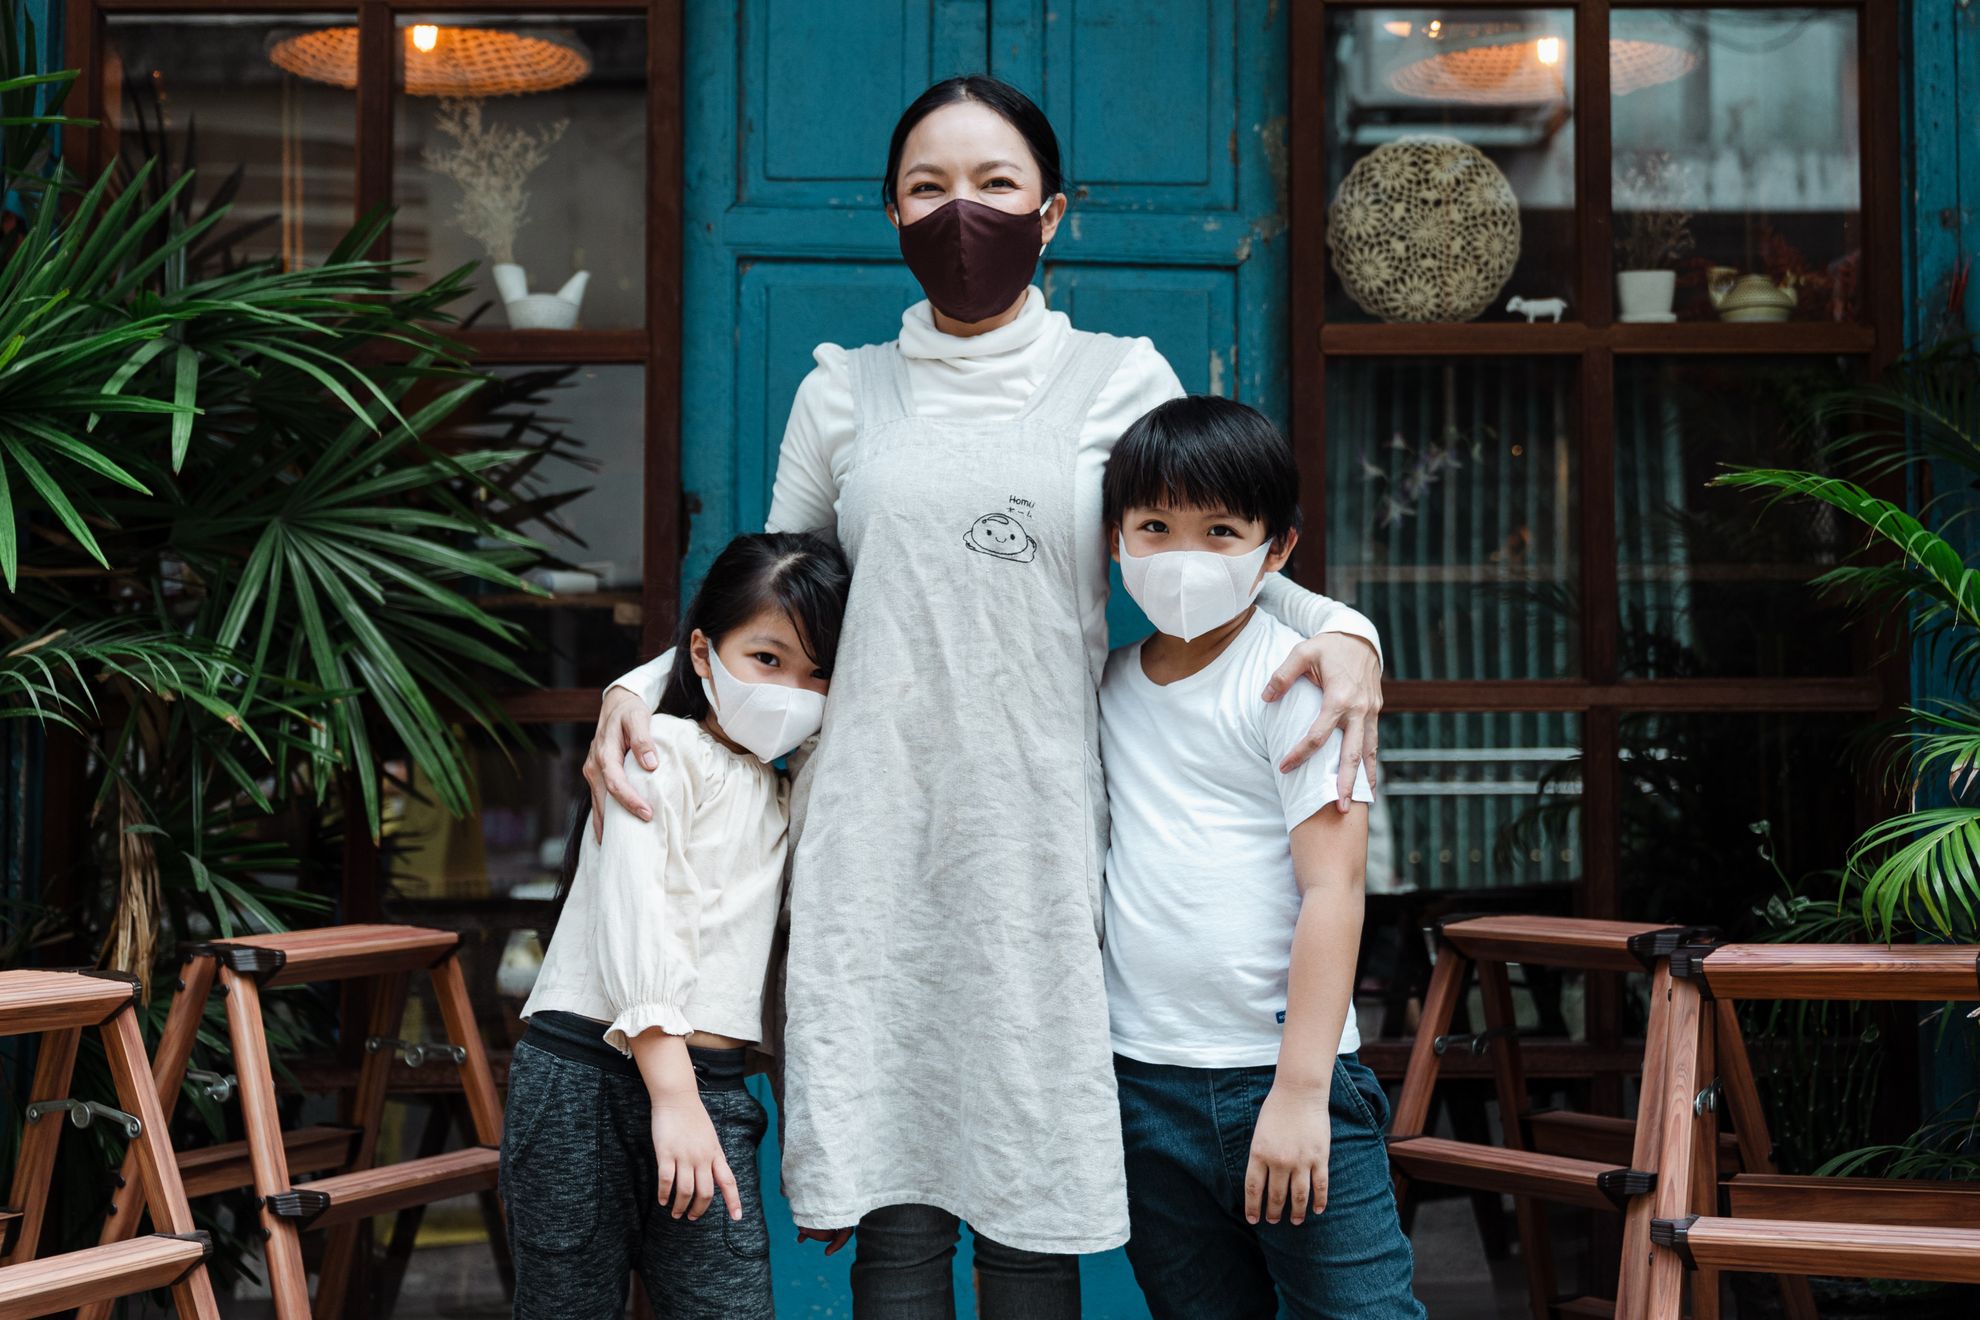 на Тайване маски носят даже в детских садах